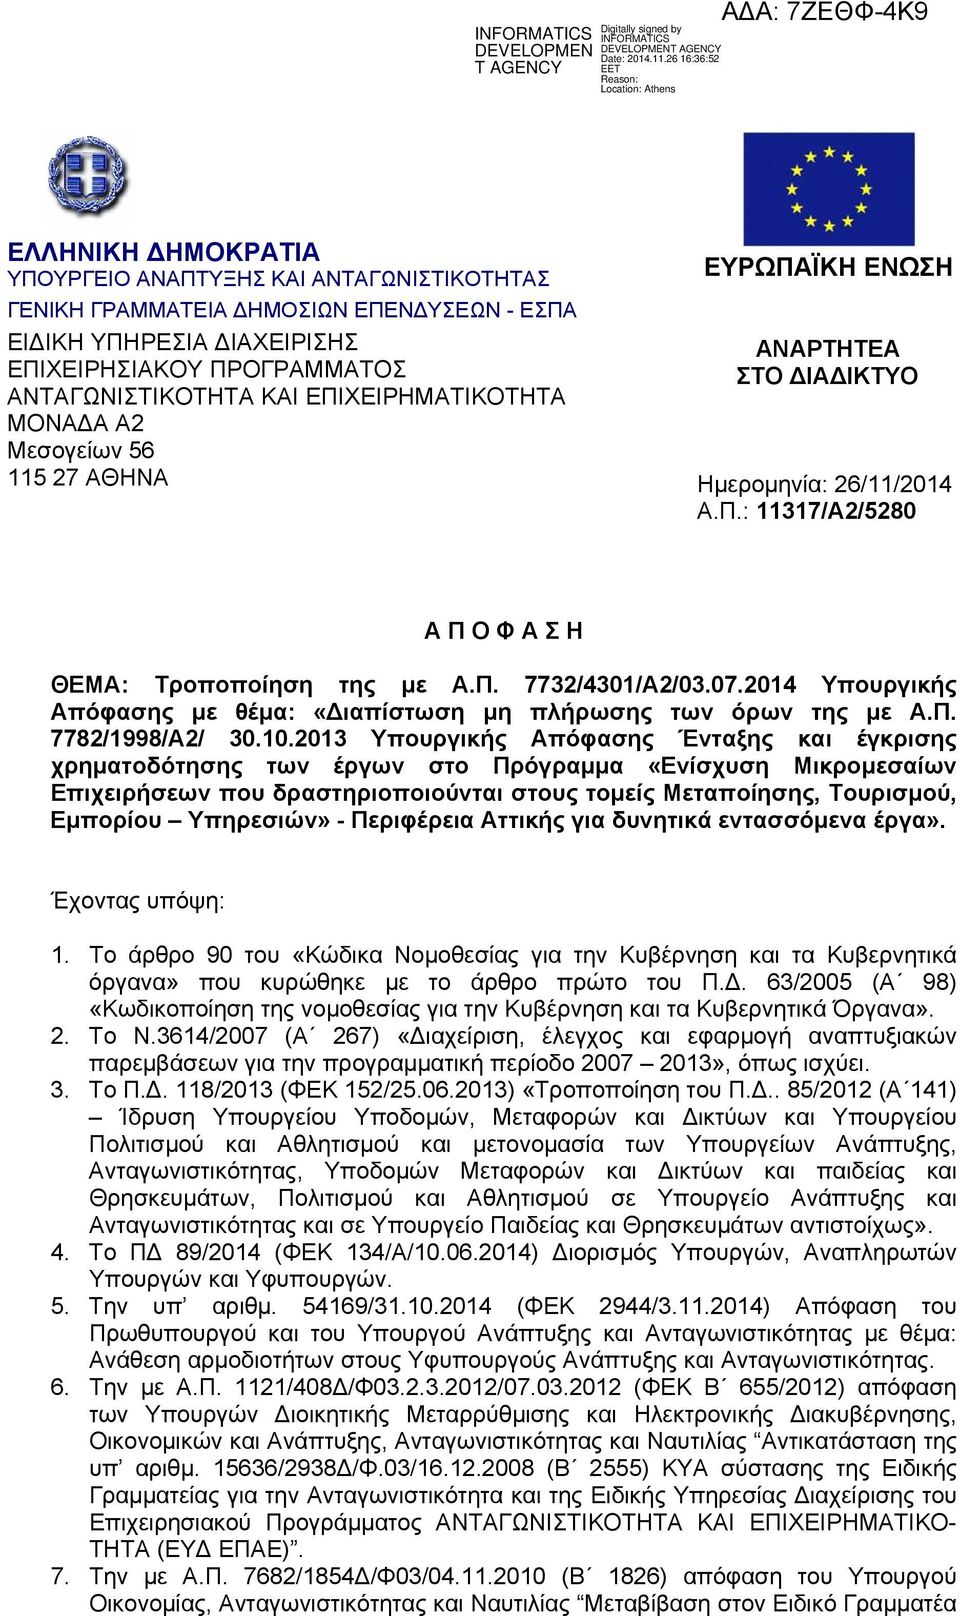 2014 Υπουργικής Απόφασης με θέμα: «ιαπίστωση μη πλήρωσης των όρων της με Α.Π. 7782/1998/Α2/ 30.10.